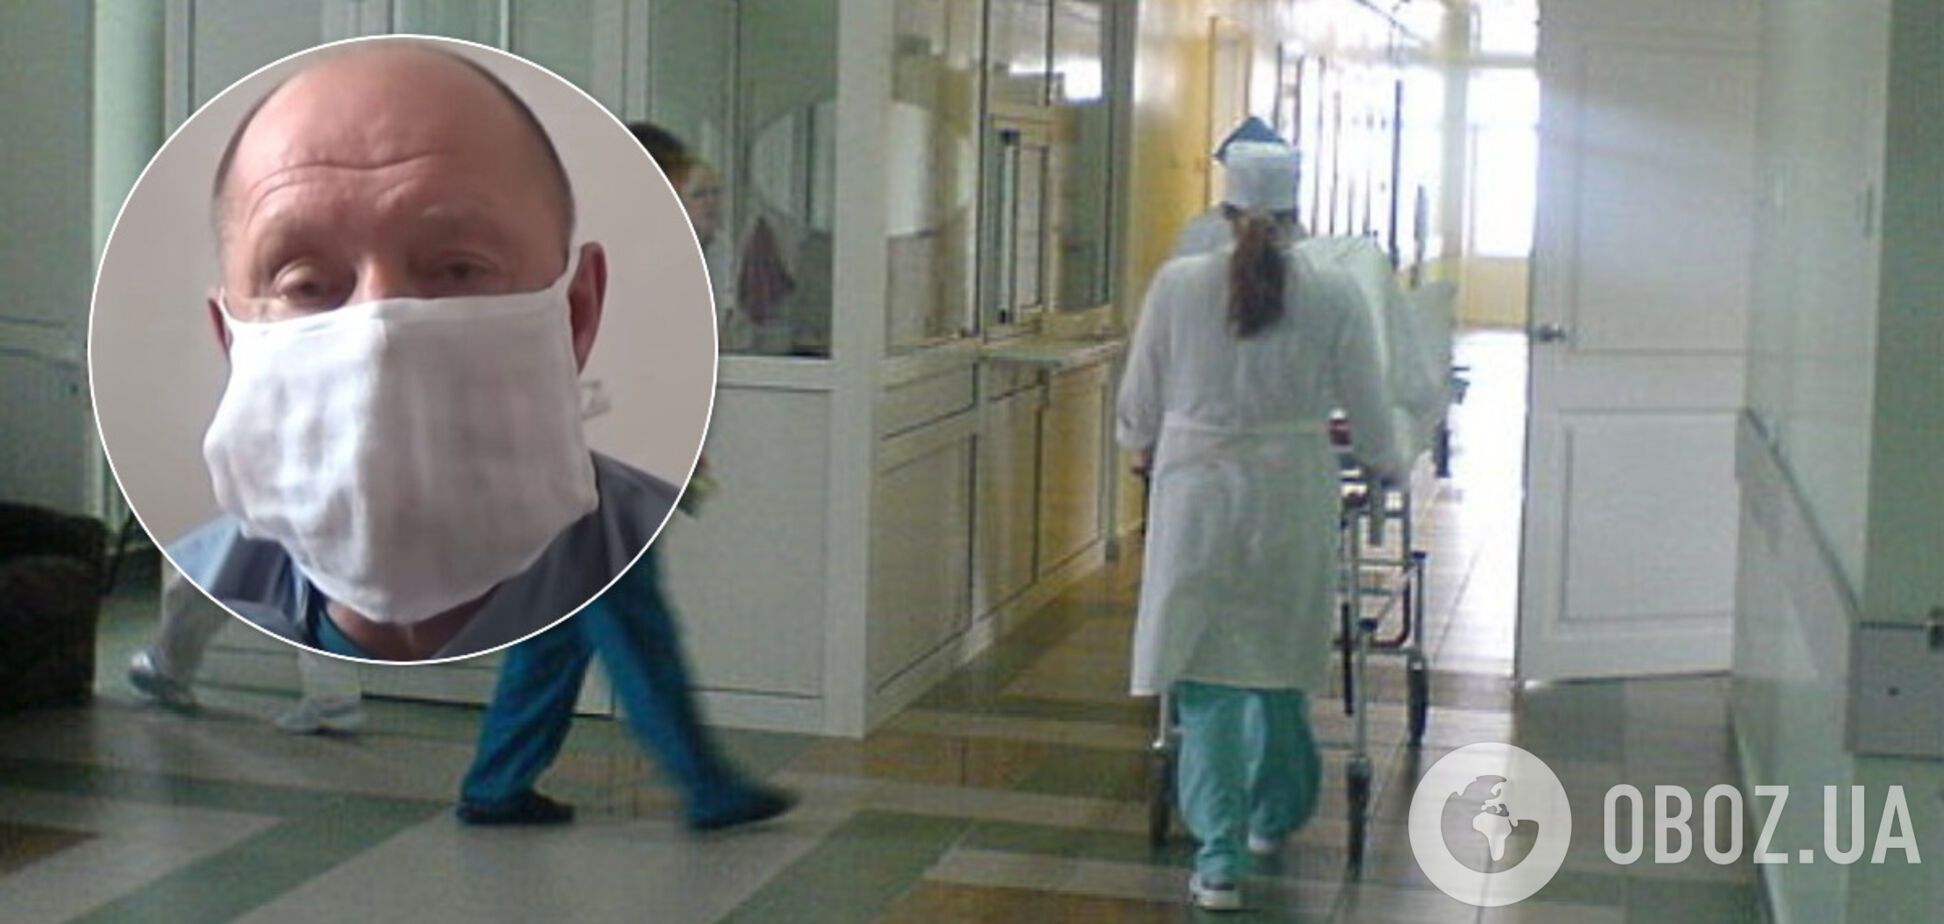 Голова лікарні на Сумщині оголосив голодування через нестачу фінансування